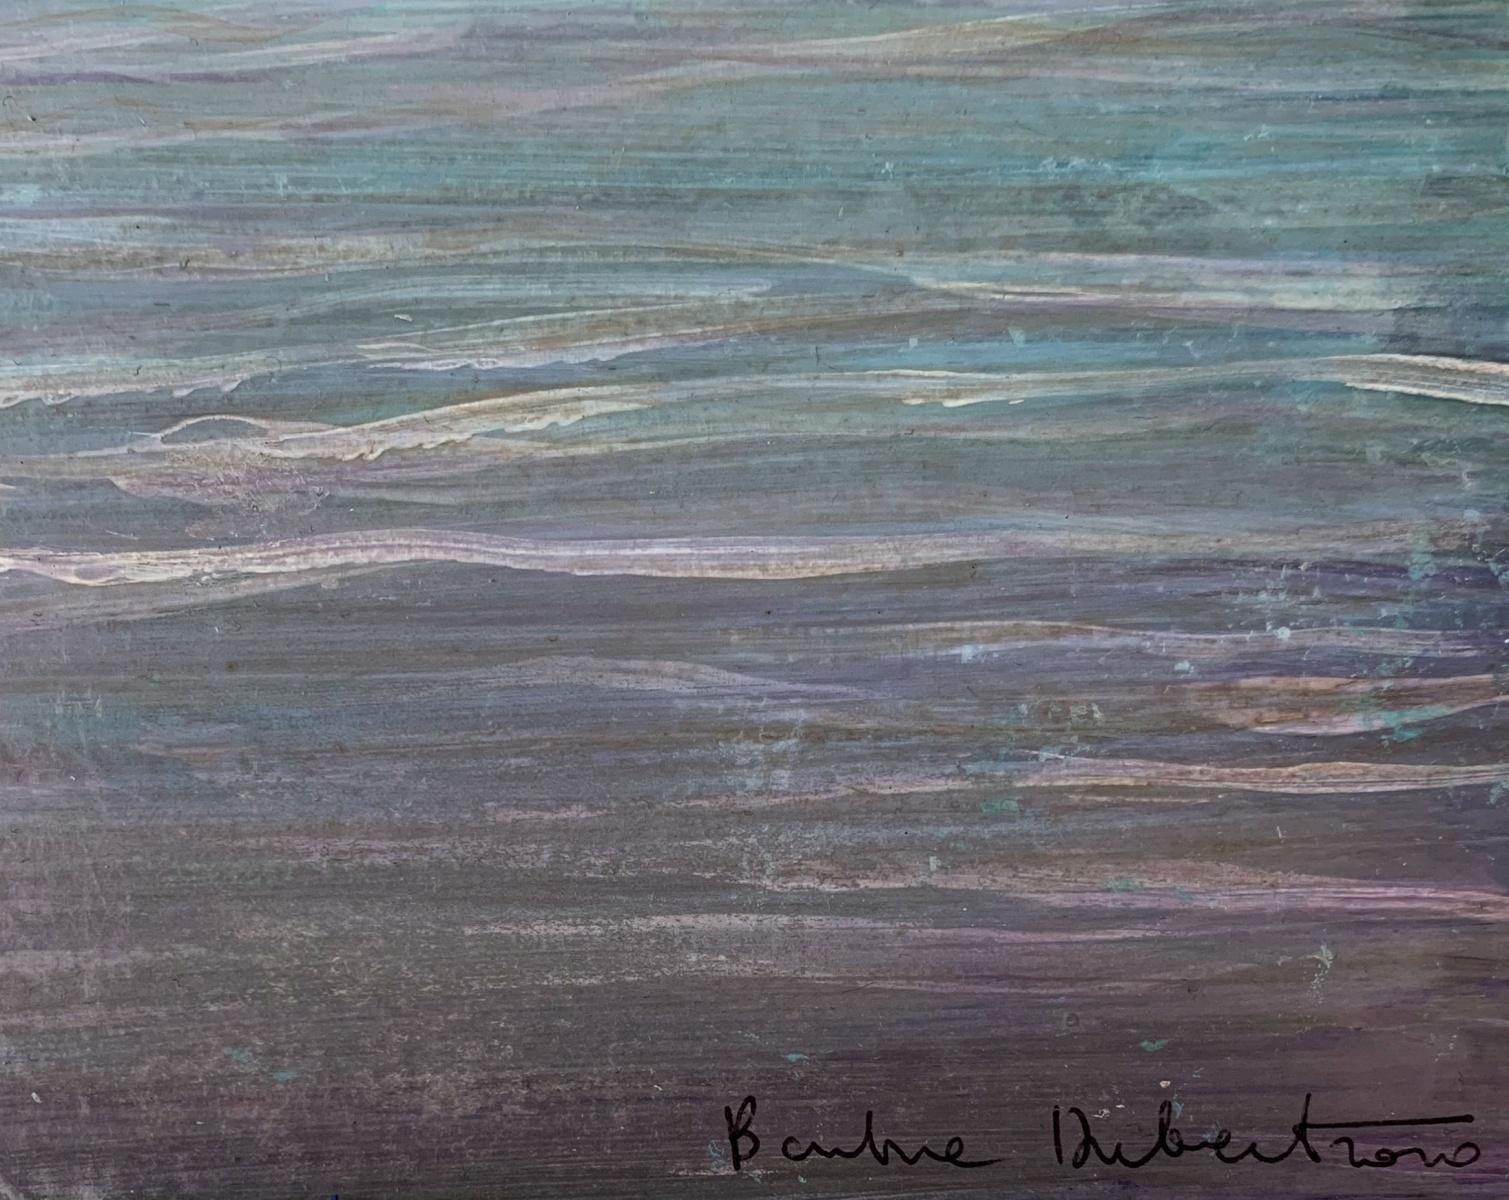 Peinture figurative contemporaine à l'acrylique sur carton de l'artiste polonaise Barbara Hubert. La peinture représente un paysage ou plutôt un paysage aquatique avec la pleine lune se reflétant dans l'eau. Les couleurs sont douces, pastel, bleues